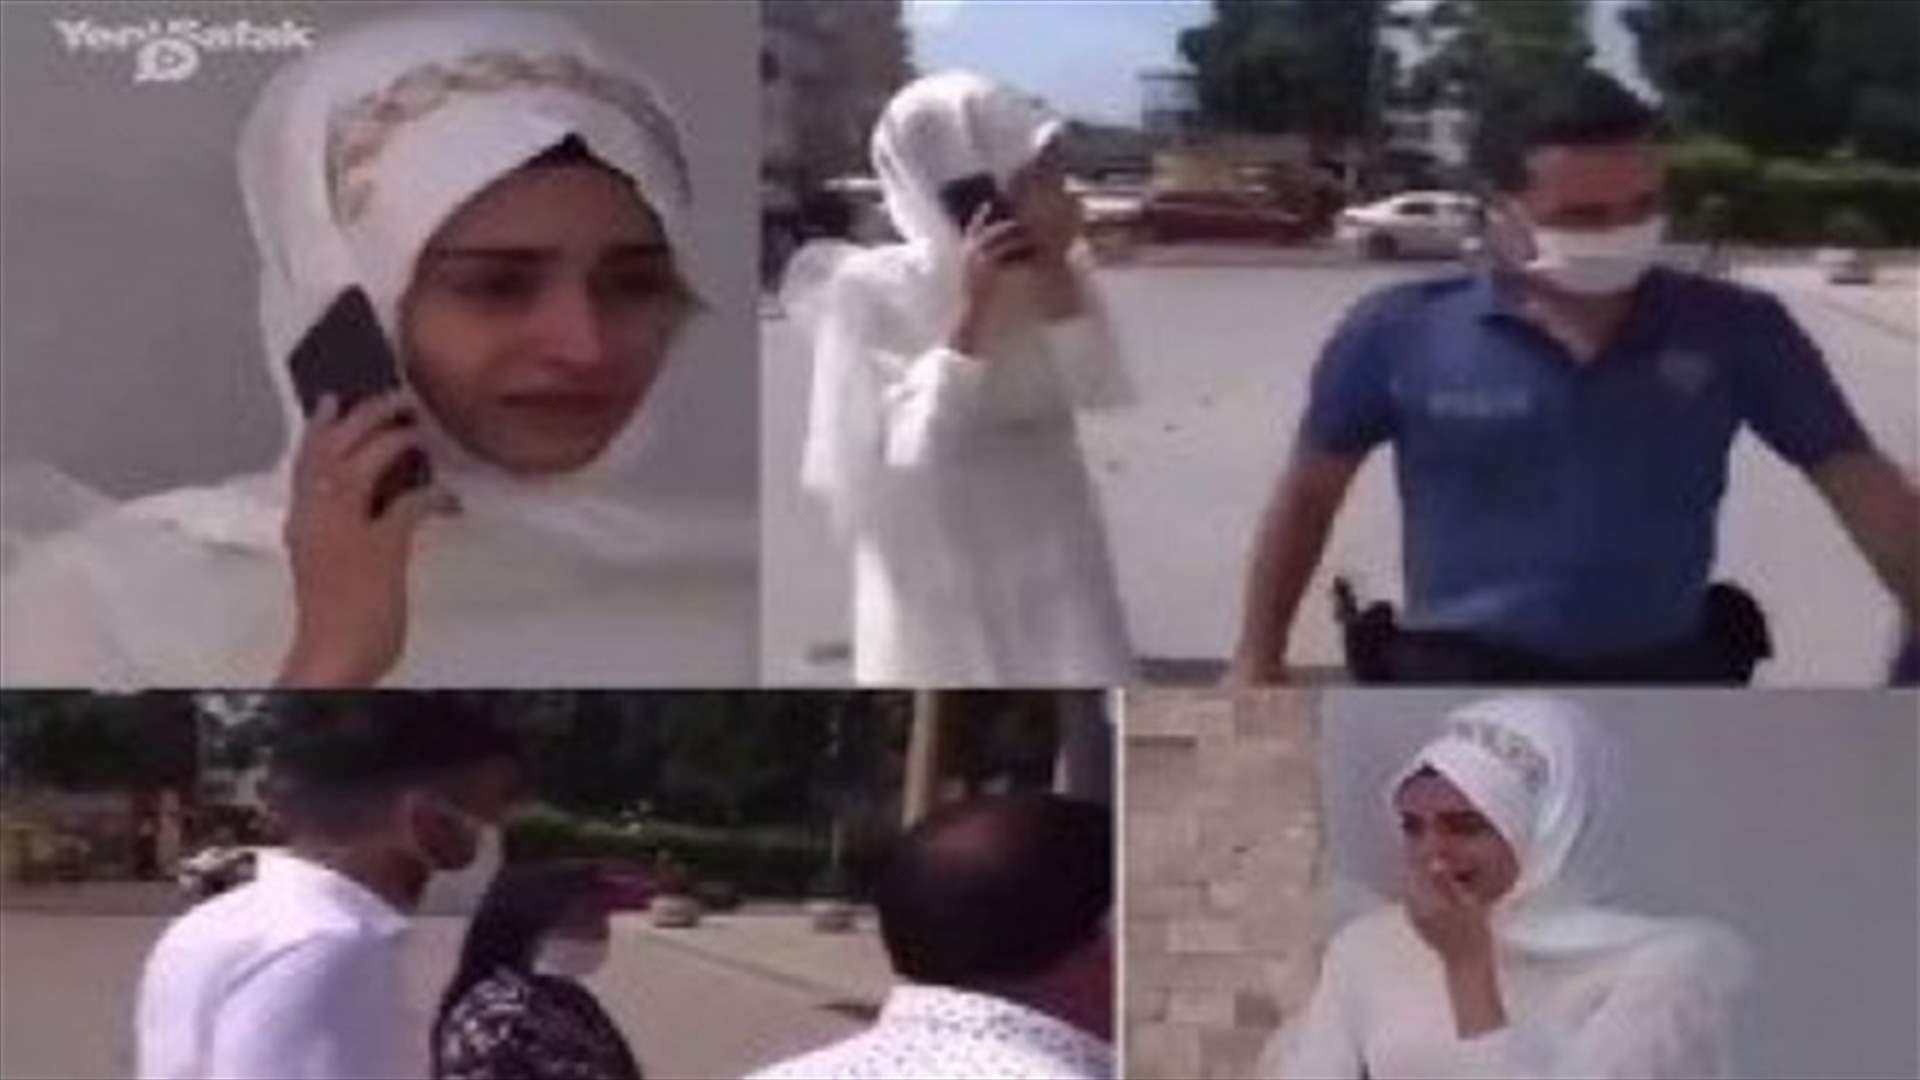 في يوم زفافها... عروس تركية تستعين بالشّرطة لمنع أهلها من إجبارها على الزّواج (فيديو)